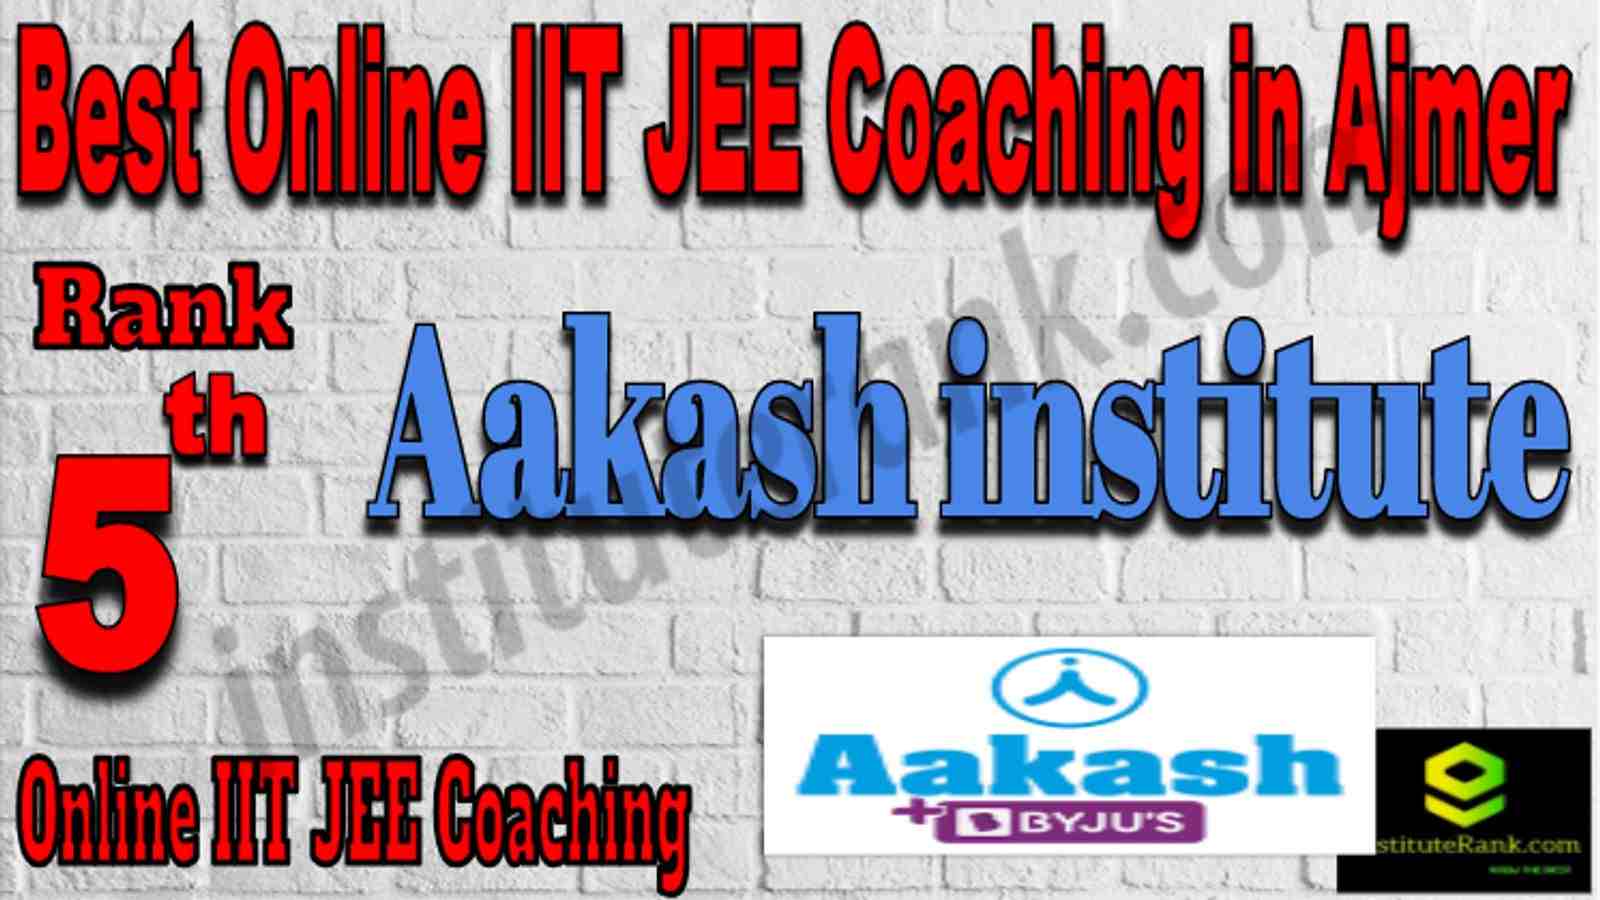 Rank 5 Best Online IIT JEE Coaching in Ajmer